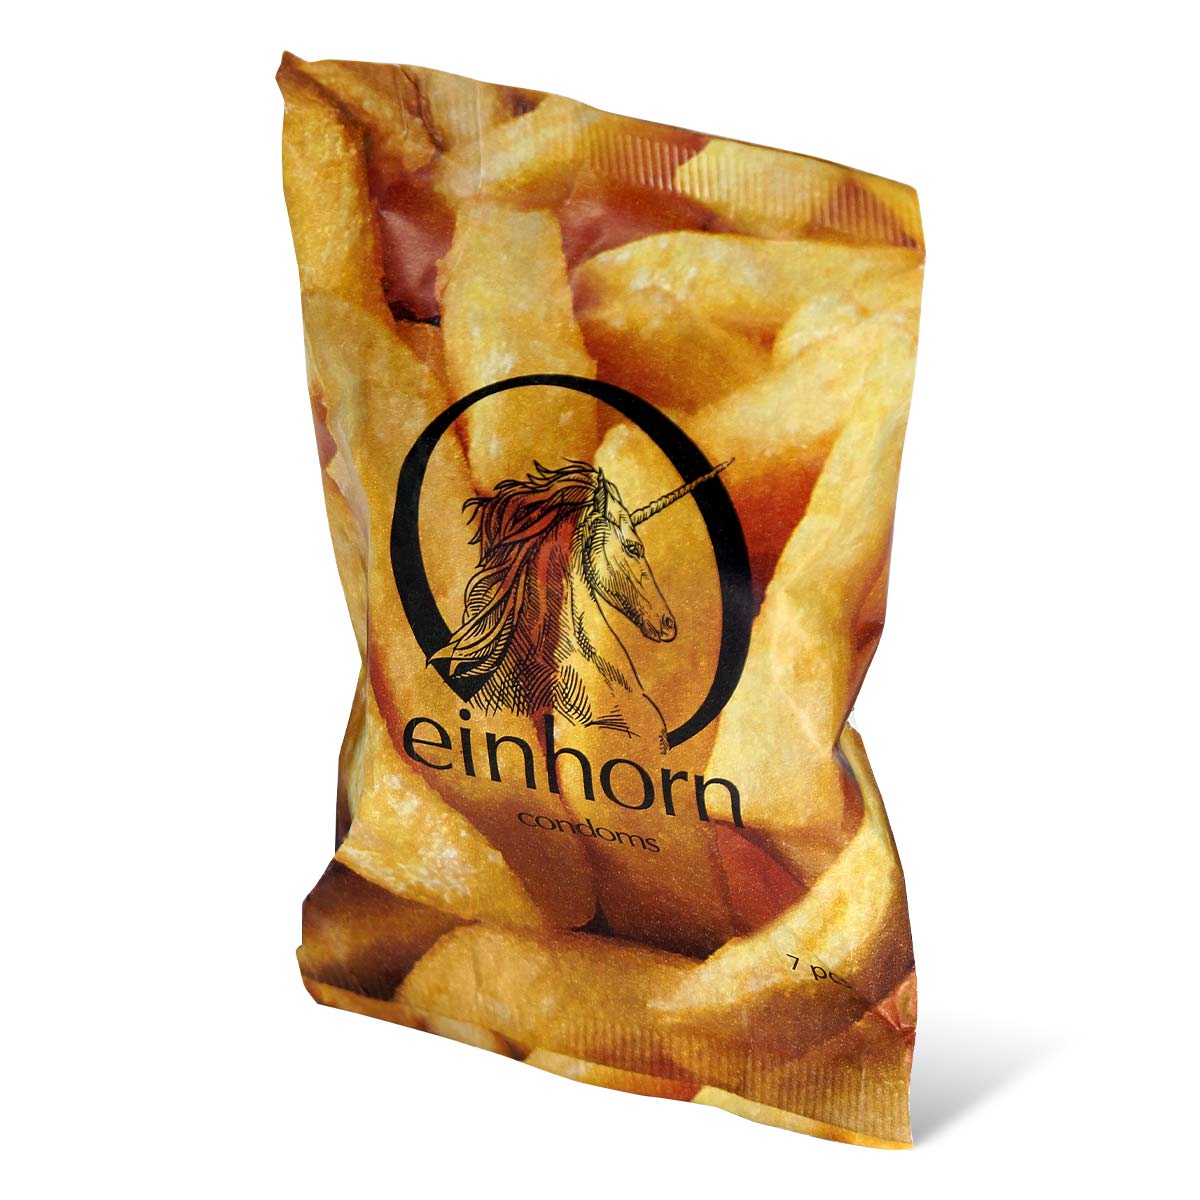 Einhorn Foodporn Vegan Condom 7's Pack Latex Condom-p_1